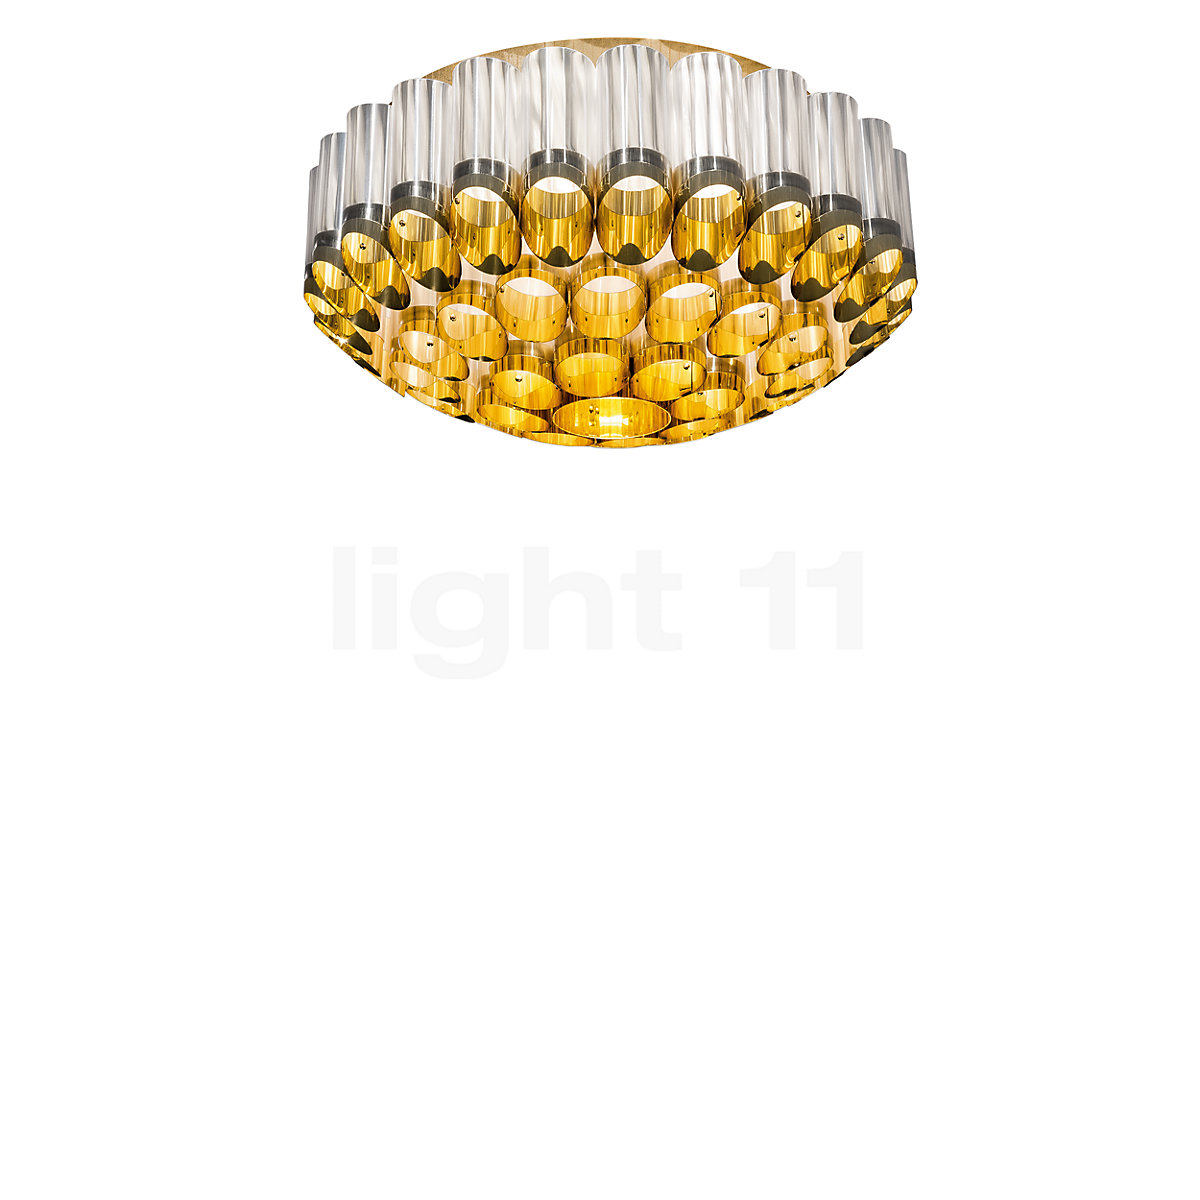 Buy Slamp Ceiling Light at light11.eu